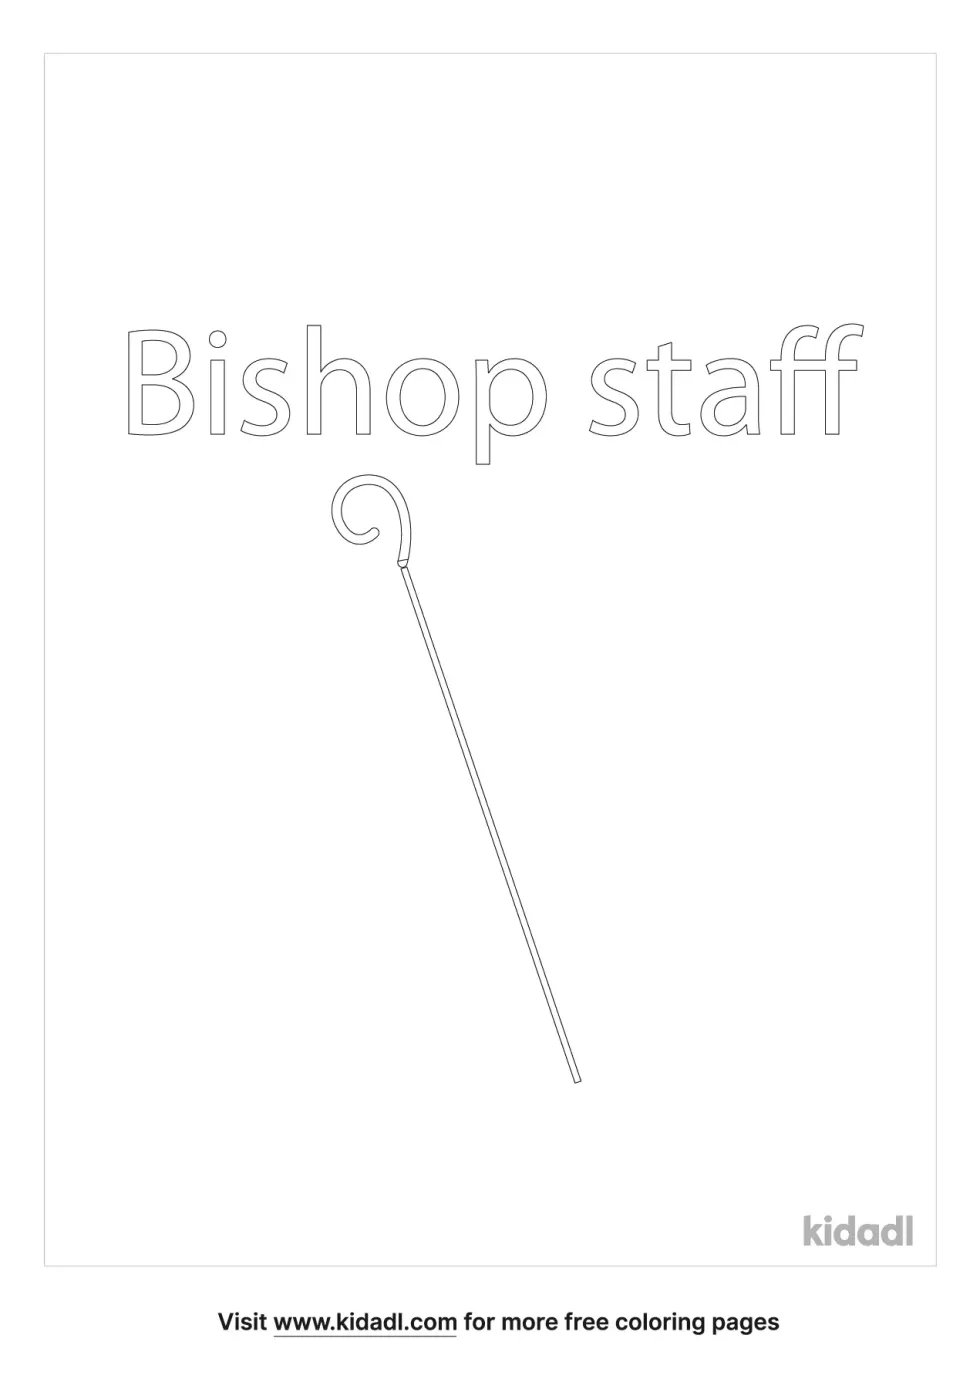 Bishop Staff